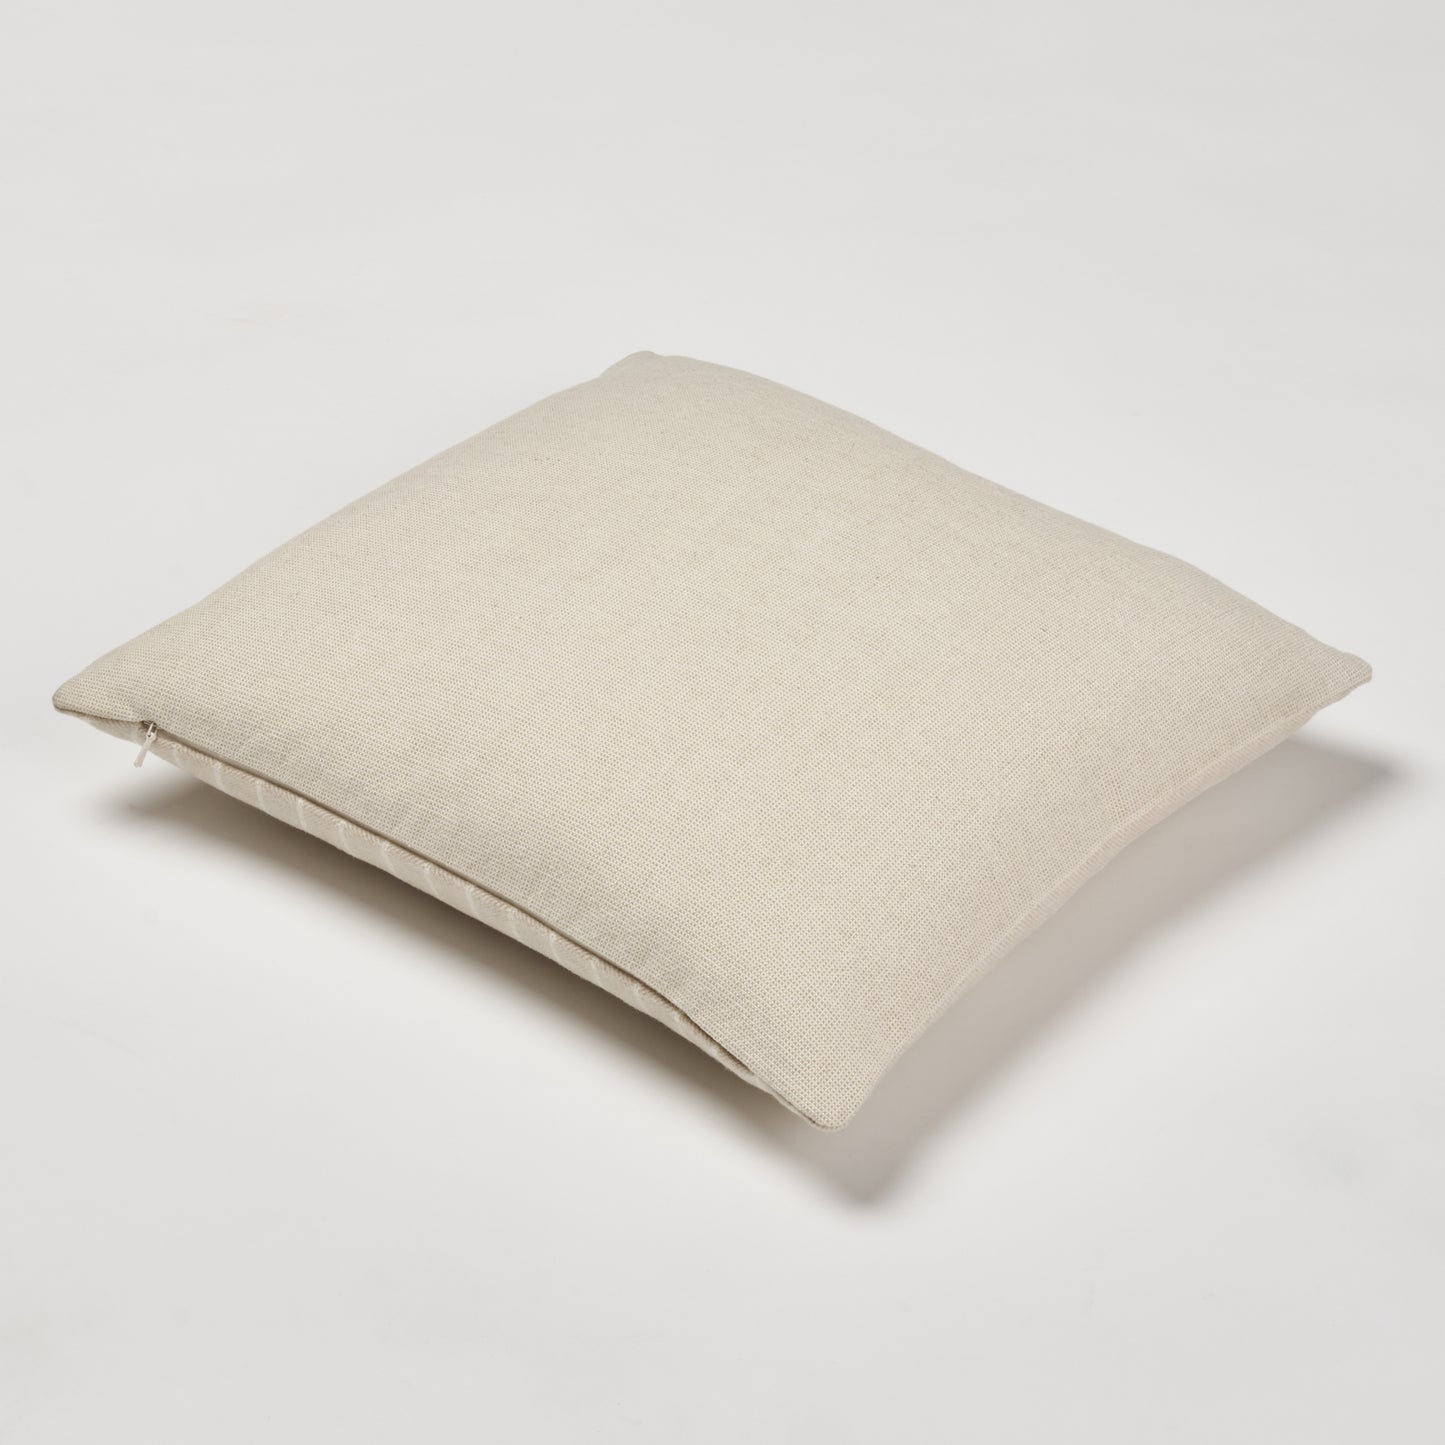 Luxe Pillow 16"x16"